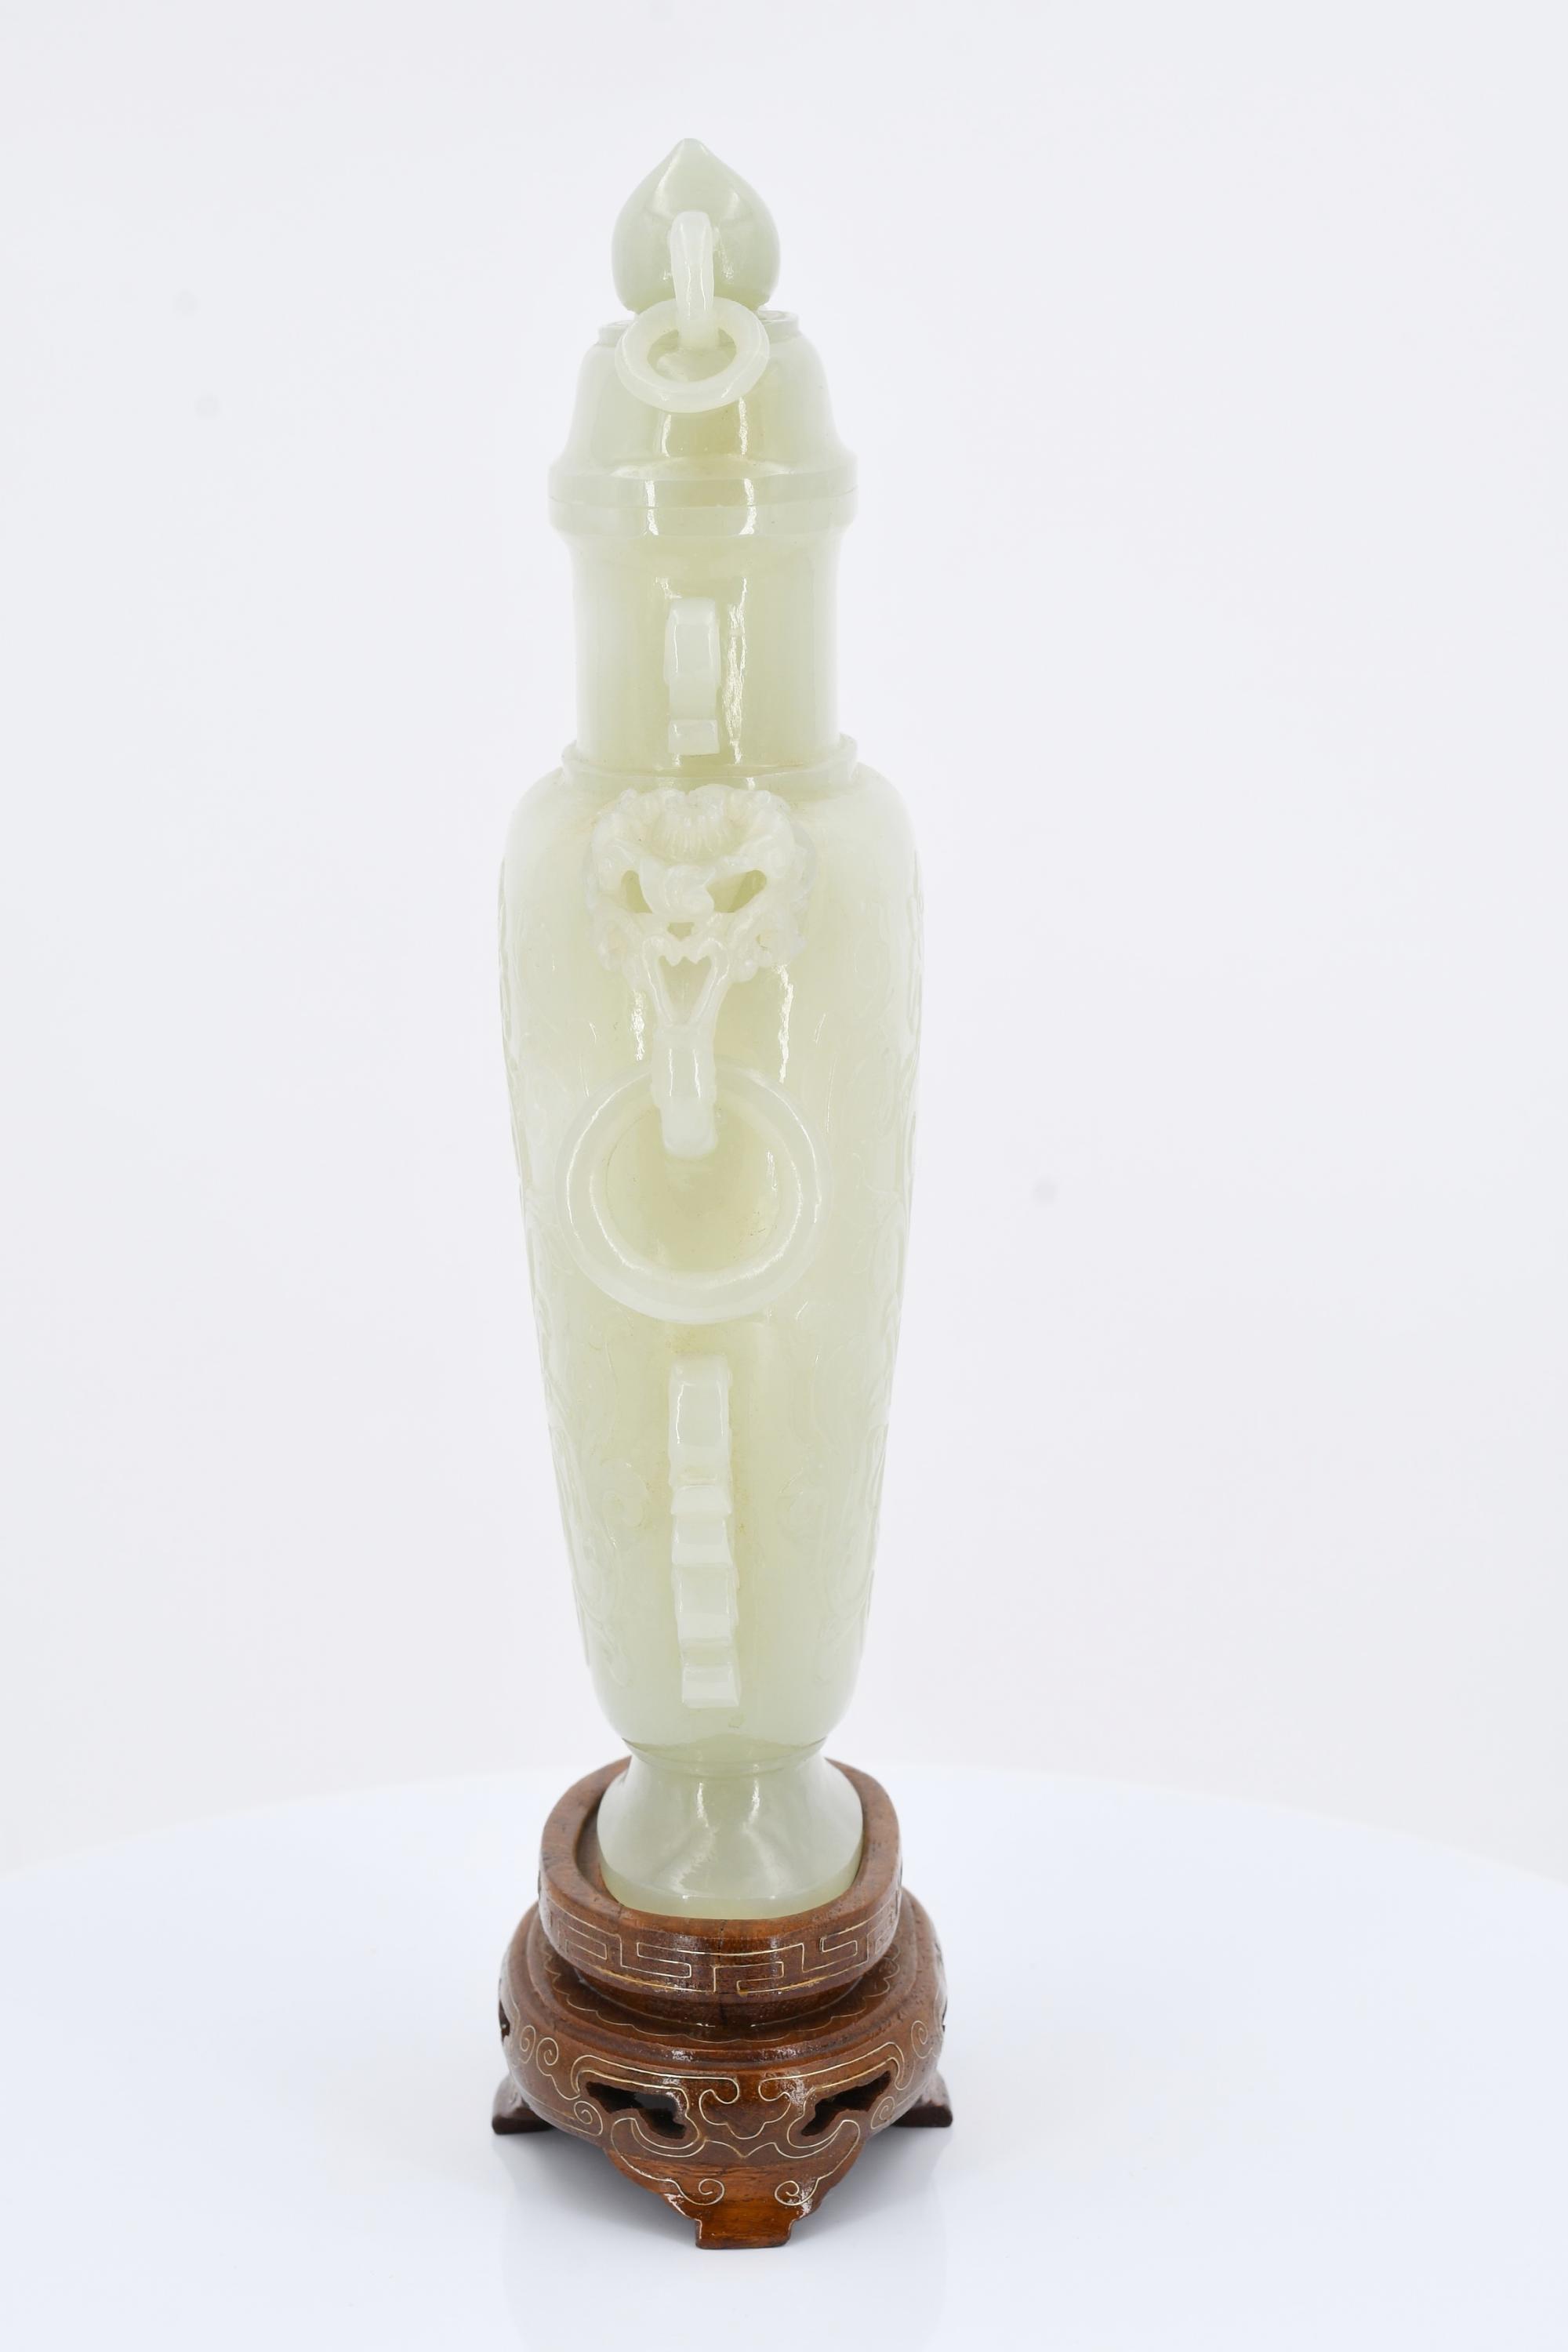 Lidded vase with pedestal - Image 3 of 7